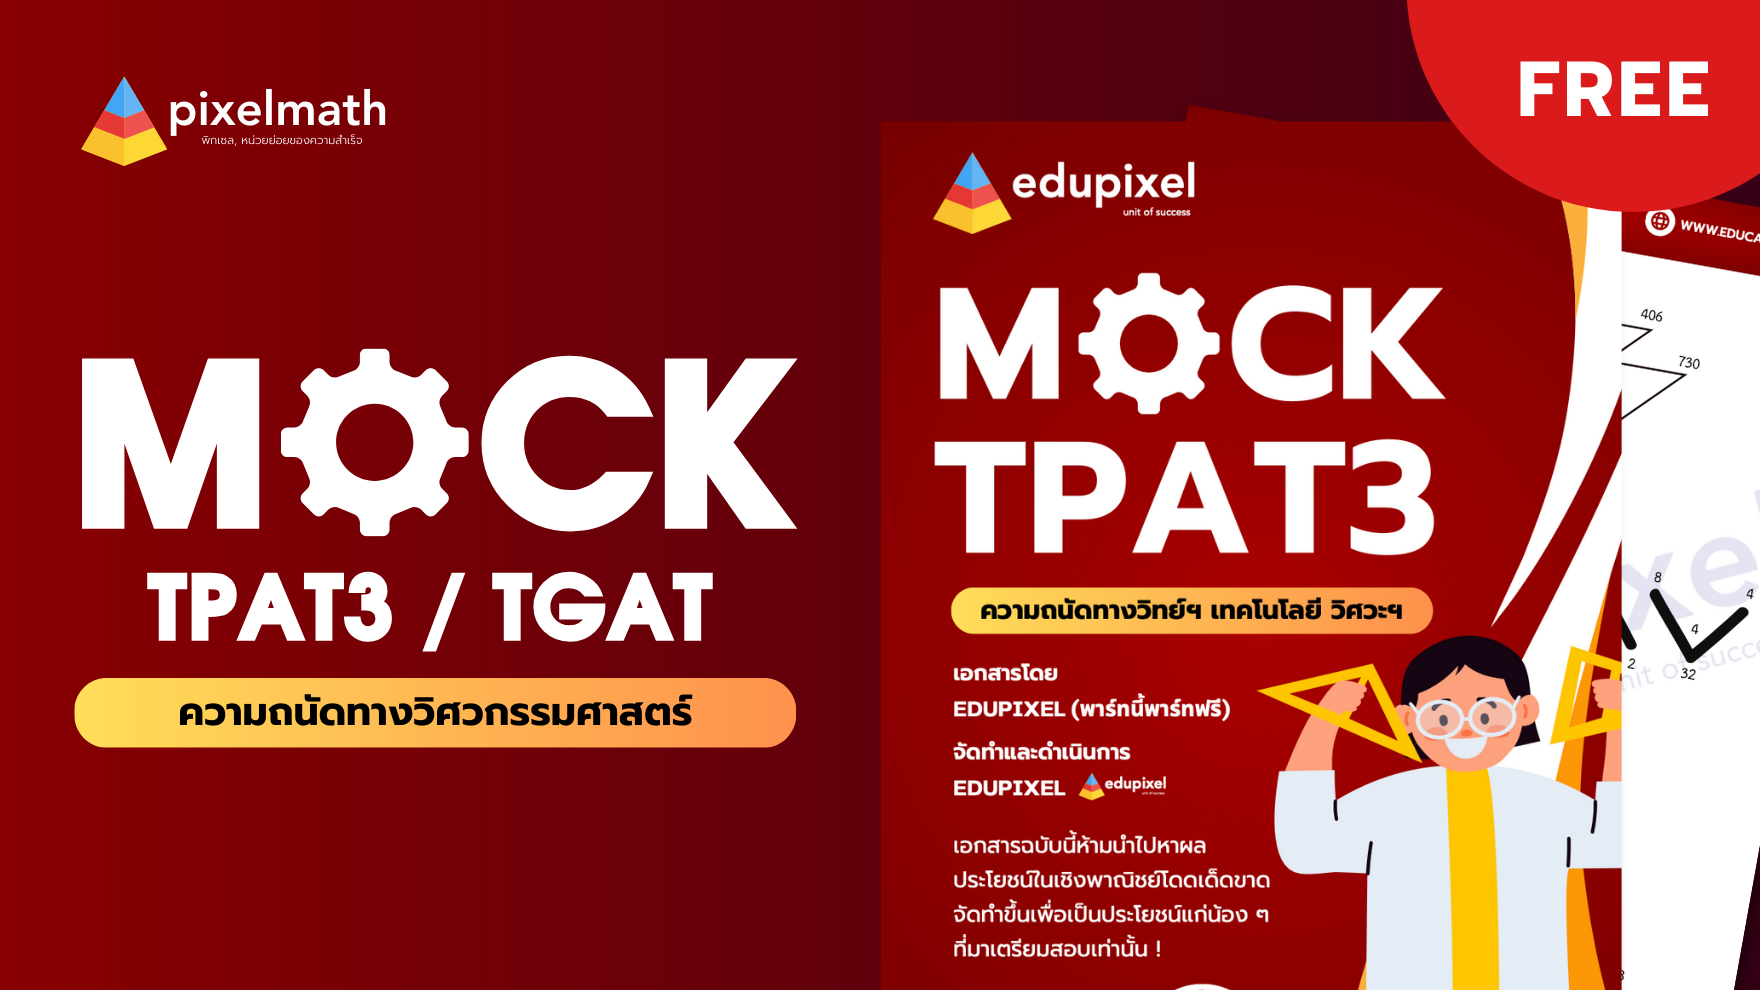 MOCK TPAT3 พาร์ทฟรีพร้อมเฉลย ! (100 ที่นั่ง)